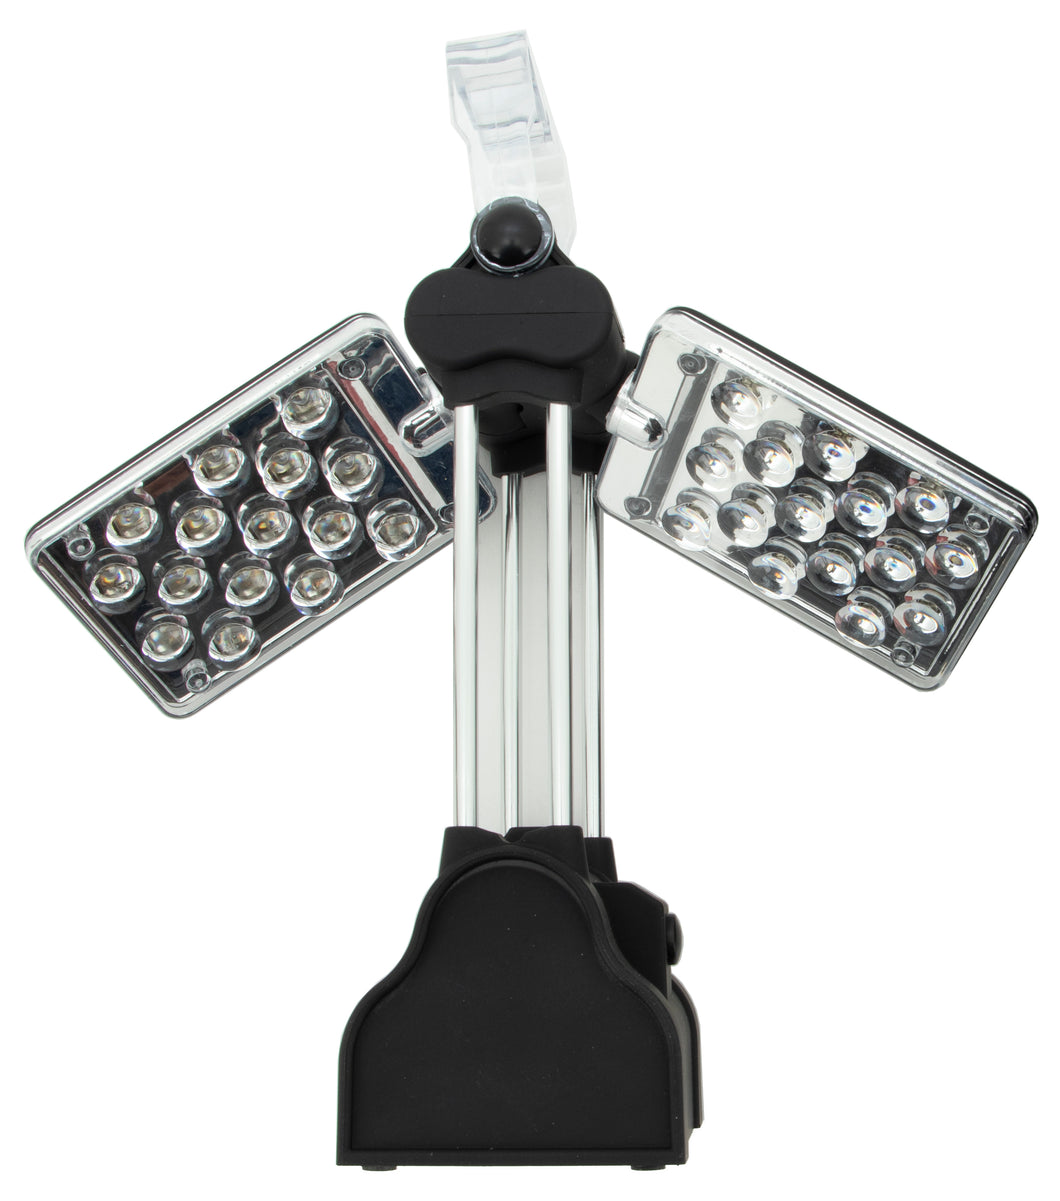 30 LED Lantern Style Light With Swivel LED Panels